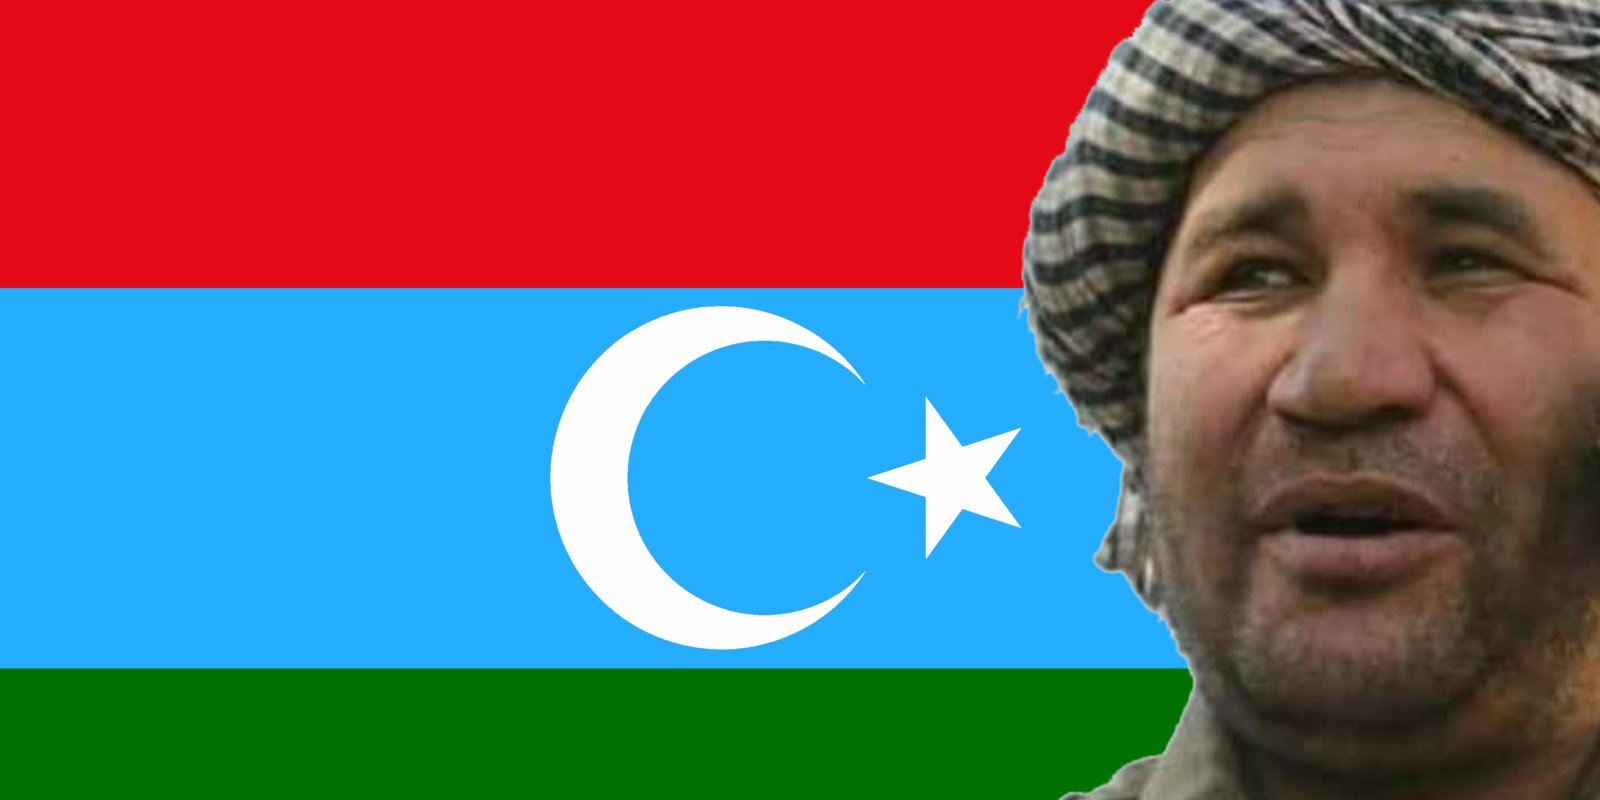 نظام الدین قیصاری فرمانده ی ضد طالب تورکستان آزاد نشد؛ جنرال دوستم نیز در حبس غیر رسمی بسر می برد